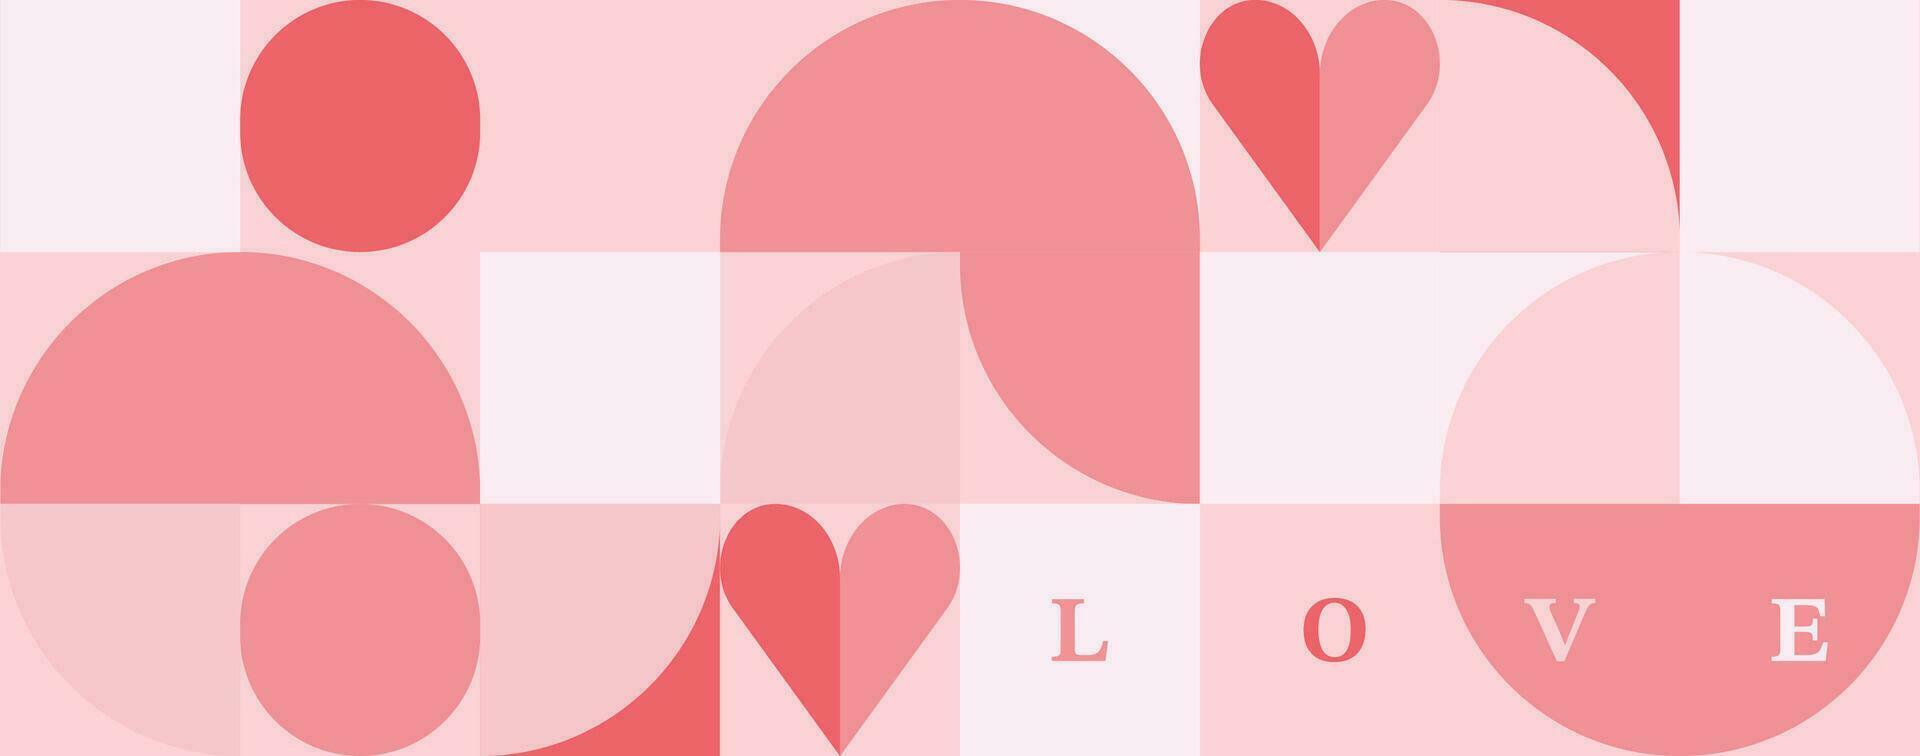 meetkundig hart achtergrond voor Valentijnsdag dag.bewerkbaar vector illustratie voor ansichtkaart, spandoek